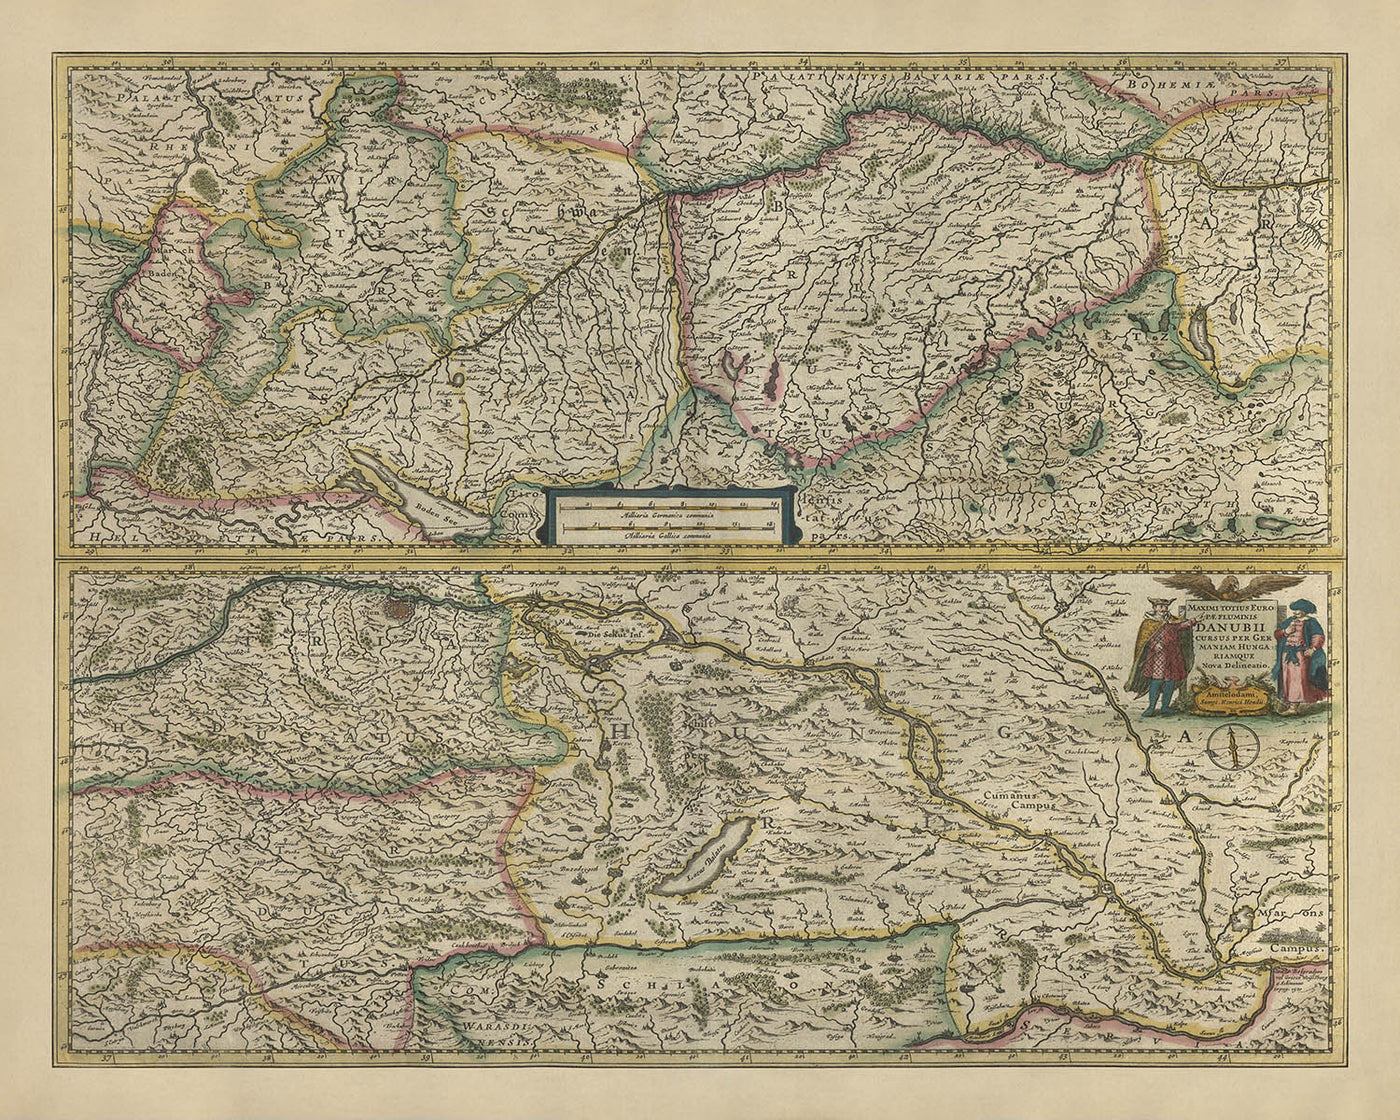 Antiguo mapa de Europa central y oriental de Mercator y Hondius, 1633: Danubio, Viena, Alpes, Selva Negra, Cárpatos